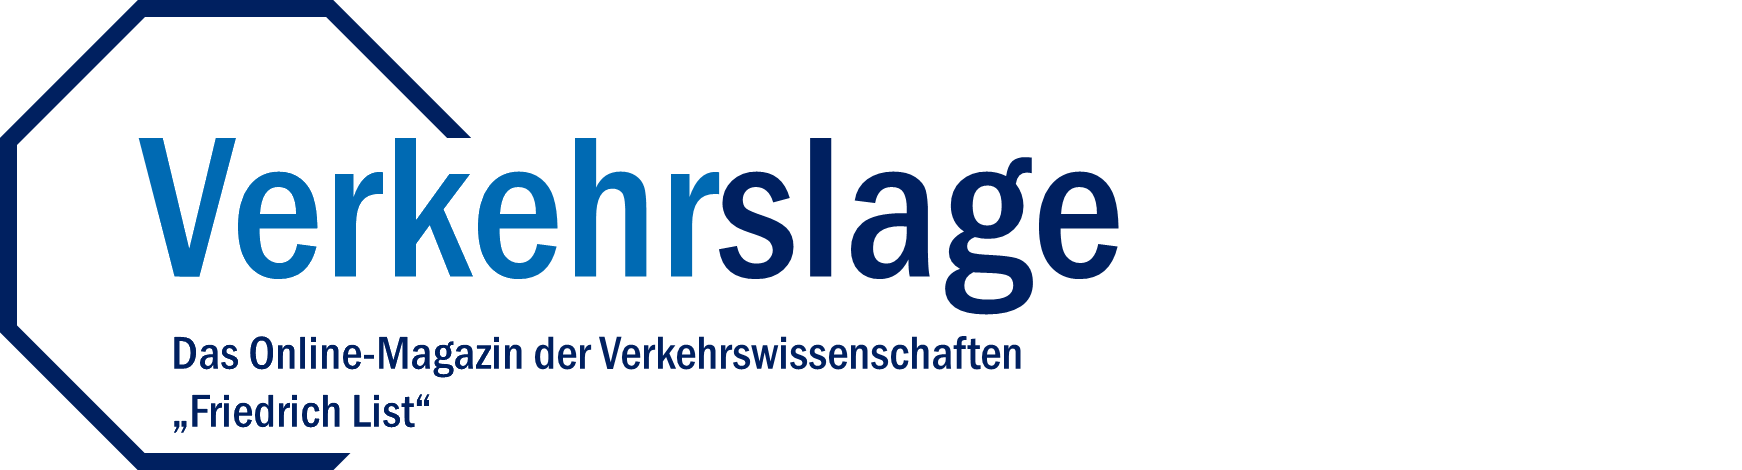 Logo des Online-Magazins "Verkehrslage"